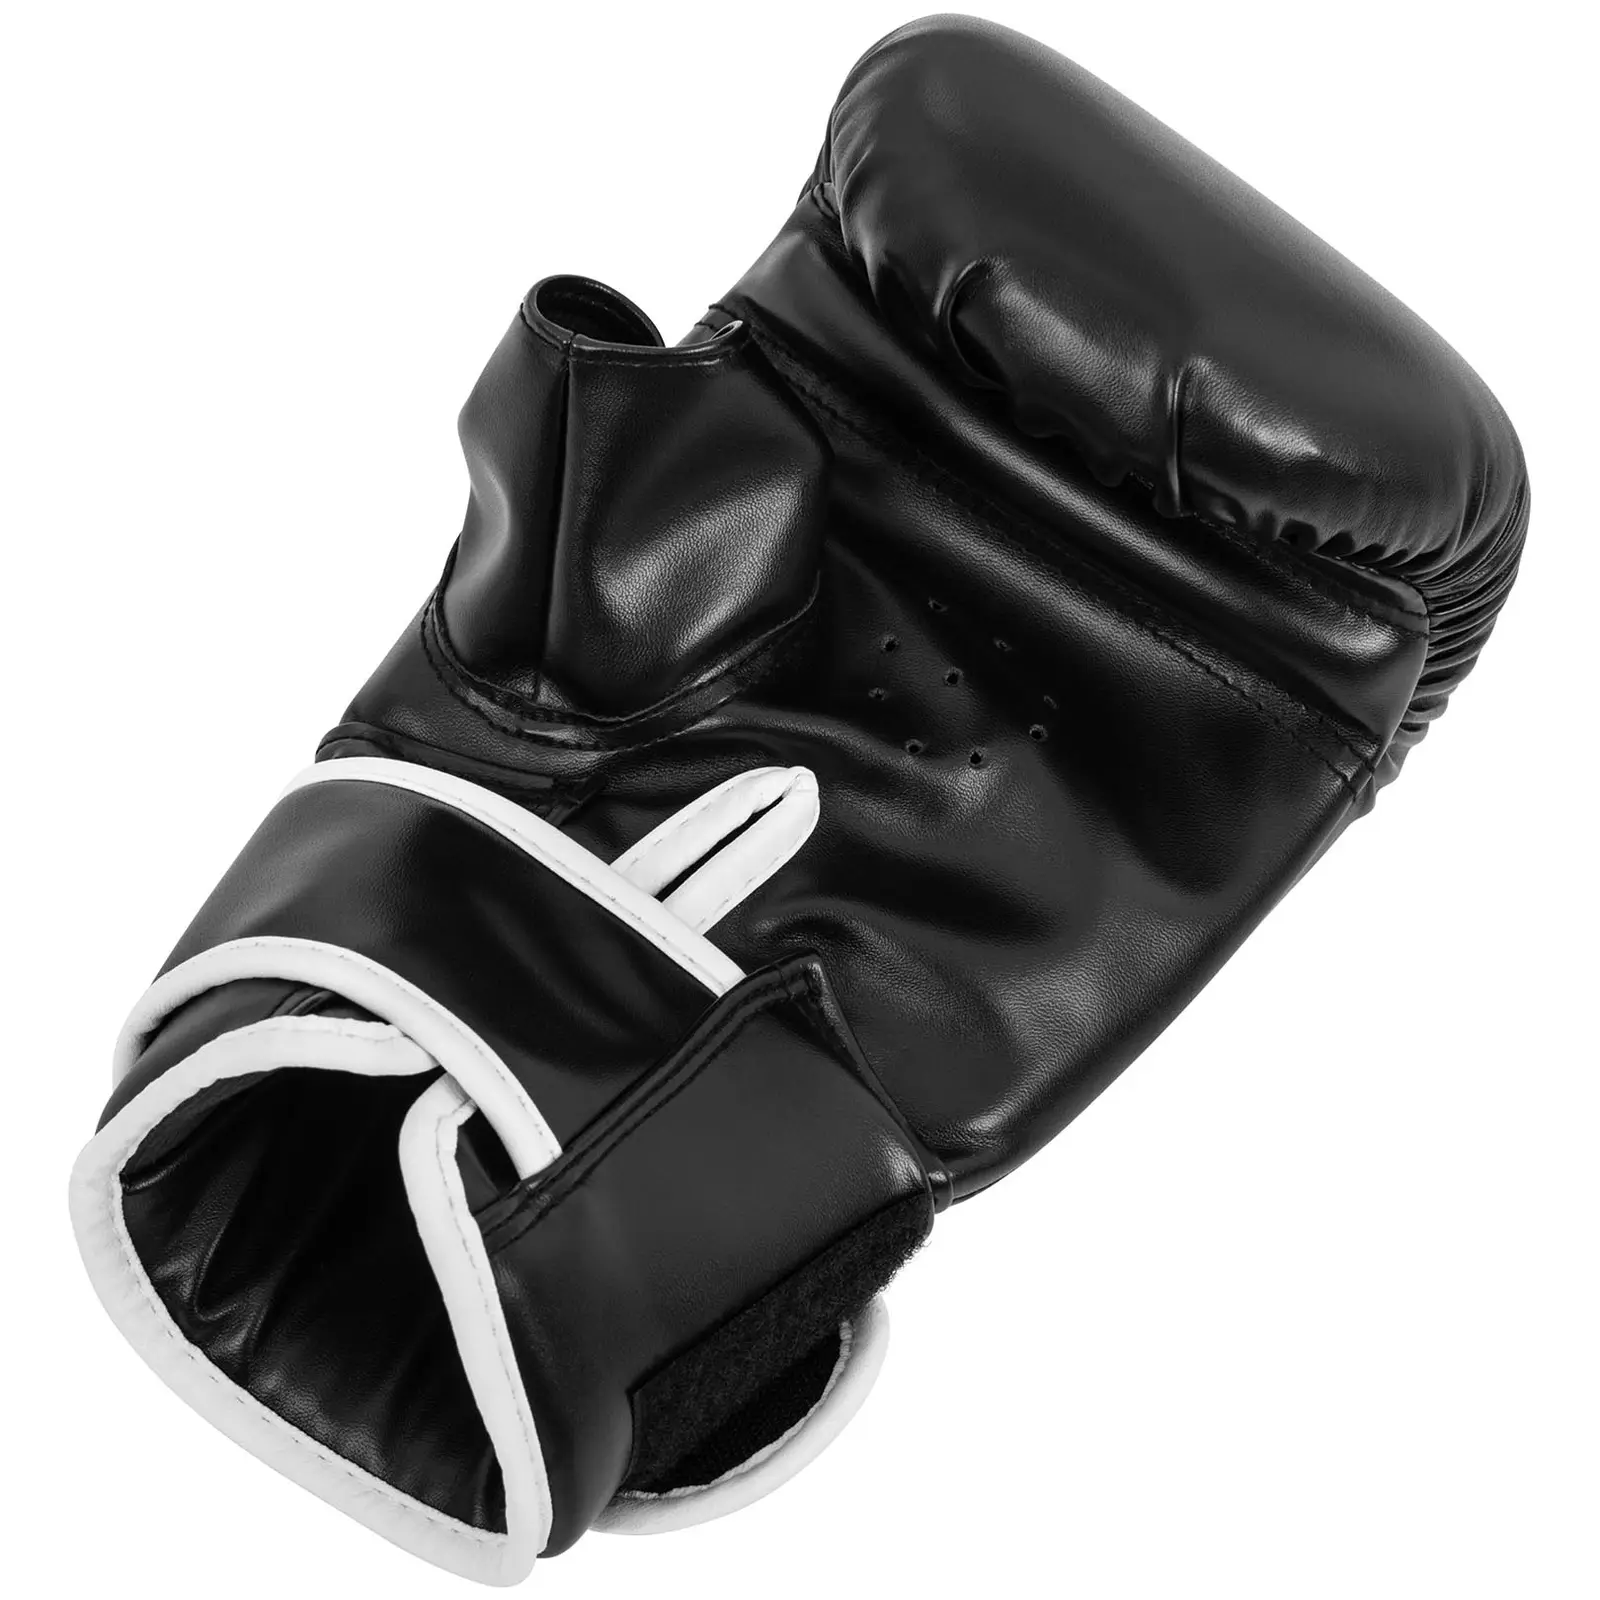 Rękawice bokserskie do treningu na worku - 12 oz - czarne